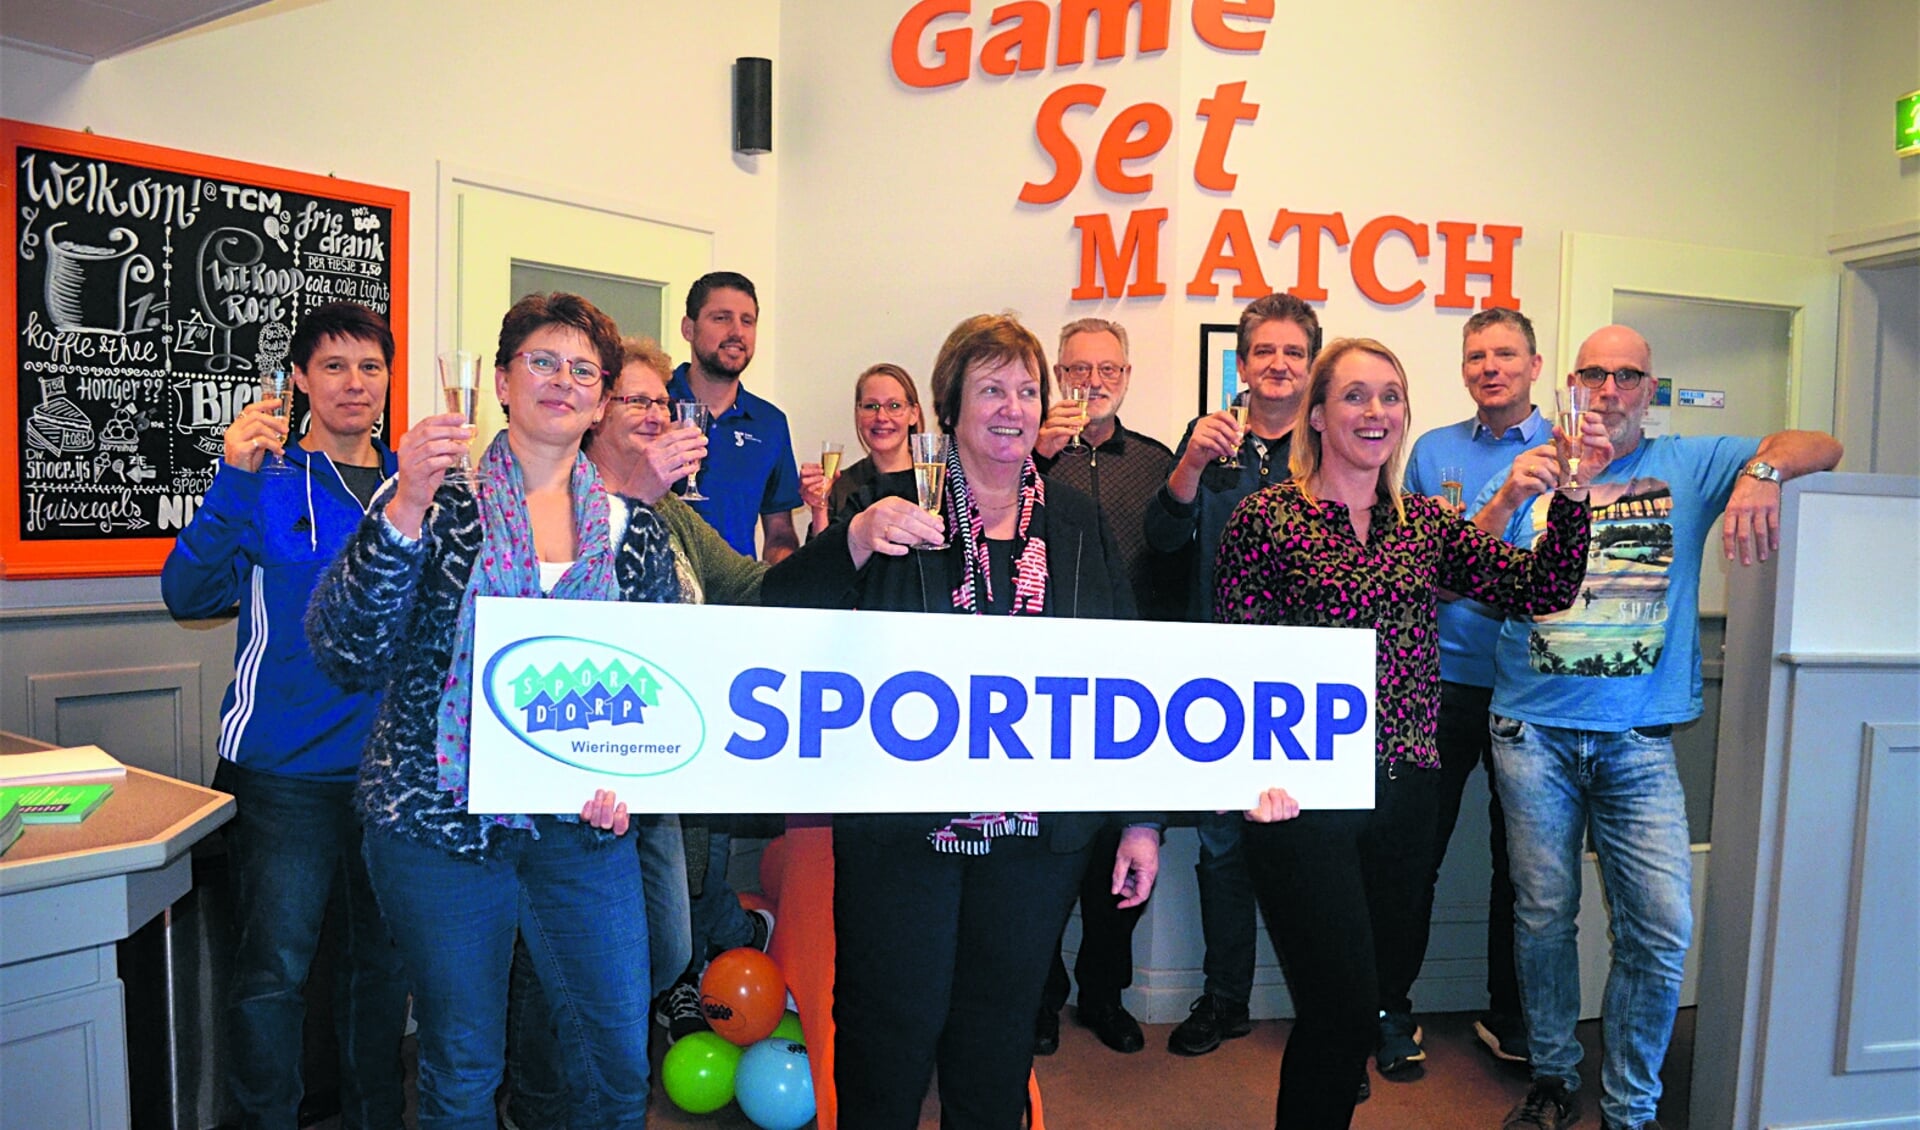 Wethouder Mary van Gent toont een Sportdorp-bord temidden van de partners van Sportdorp Wieringermeer.